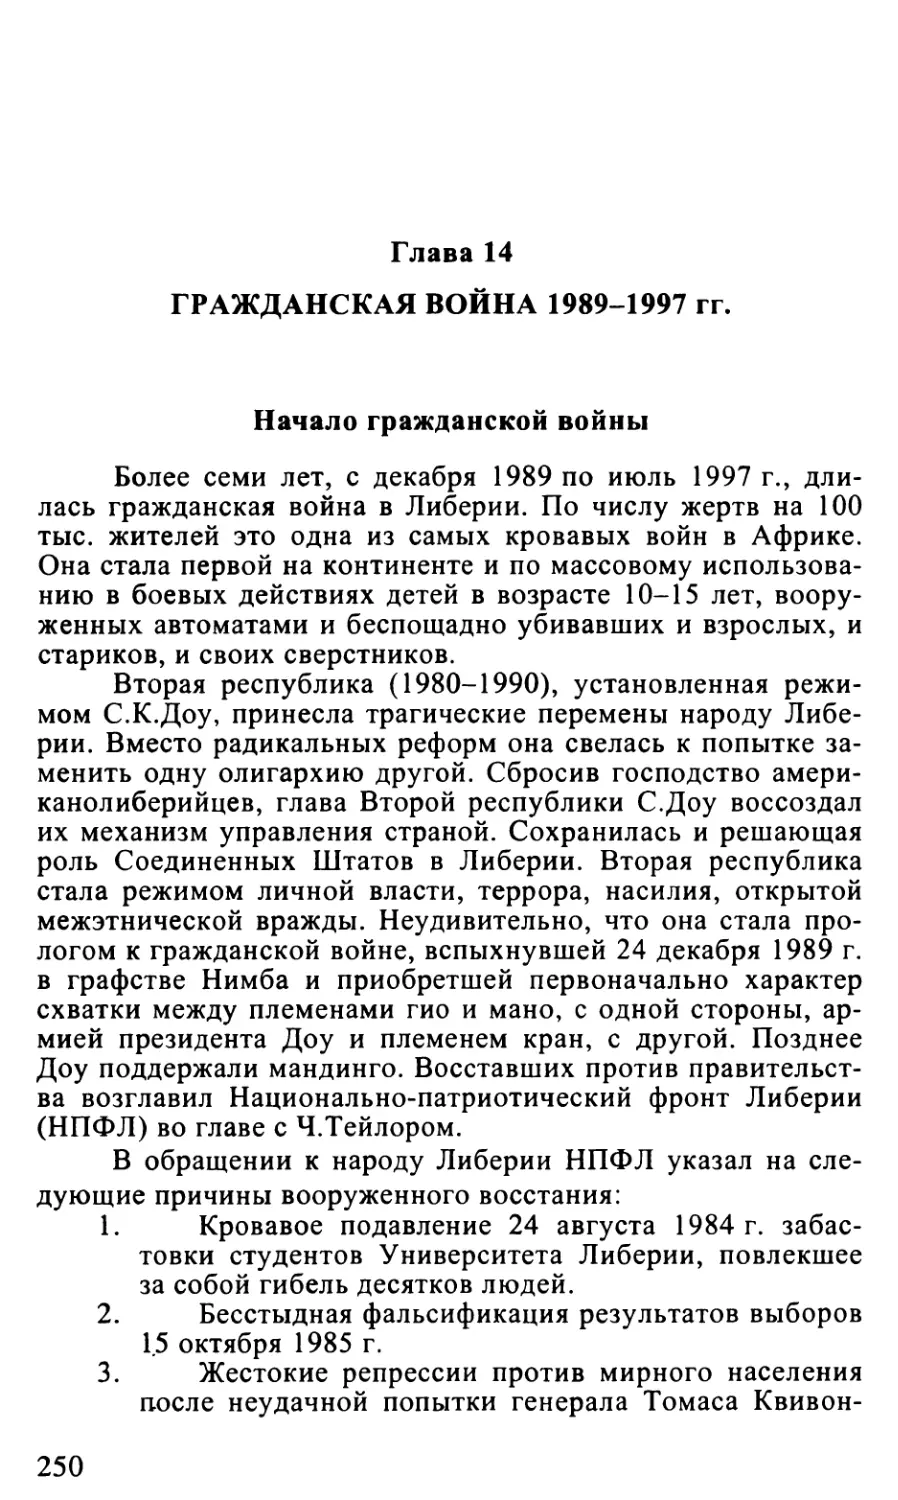 Глава 14. Гражданская война 1989–1997 гг.